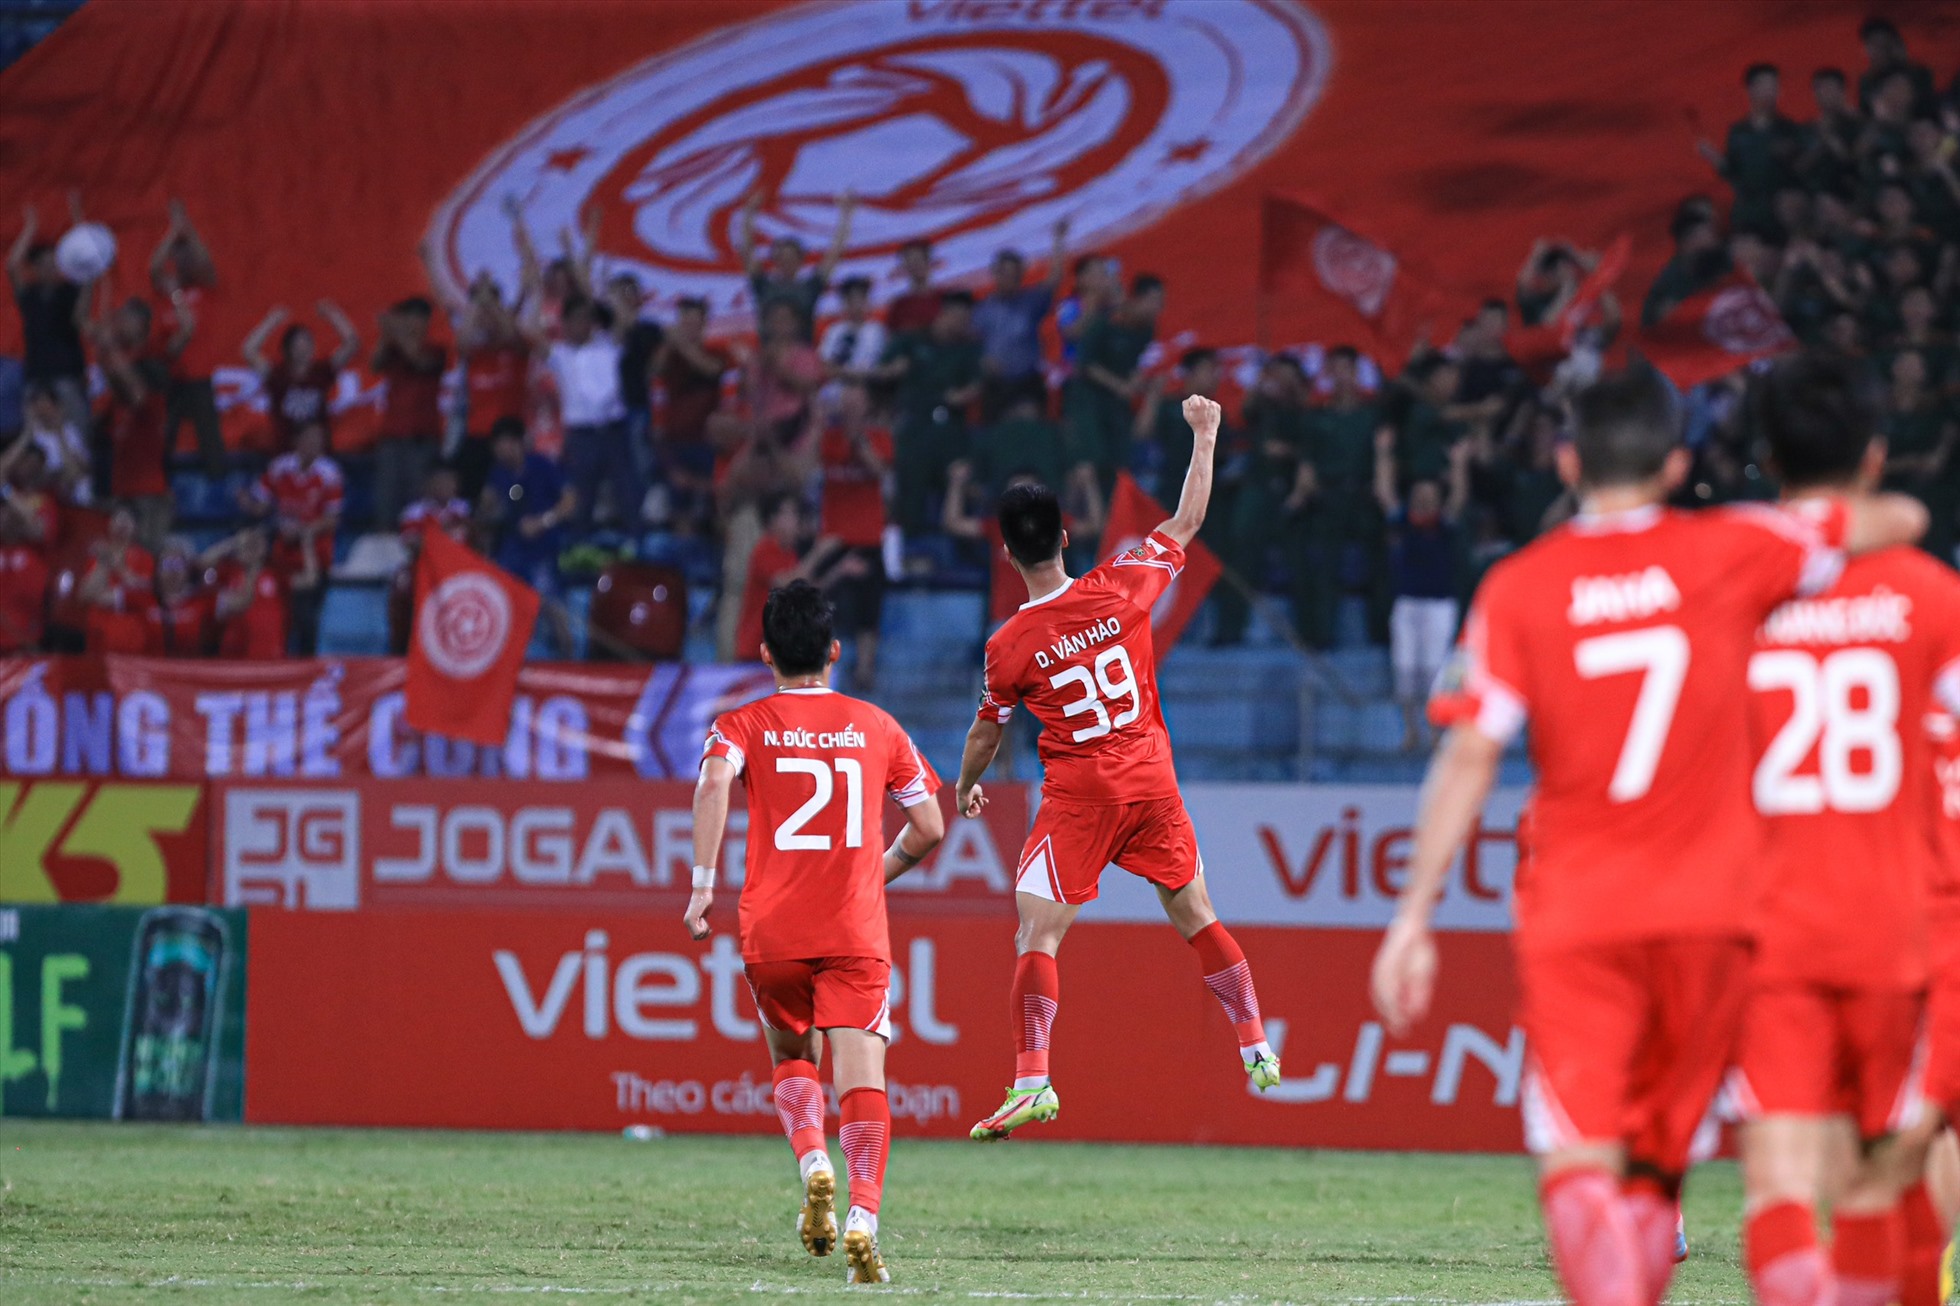 Tới phút 56, Văn Hào có pha dứt điểm từ tuyến 2 chính xác, ấn định chiến thắng 3-0 cho câu lạc bộ Viettel.